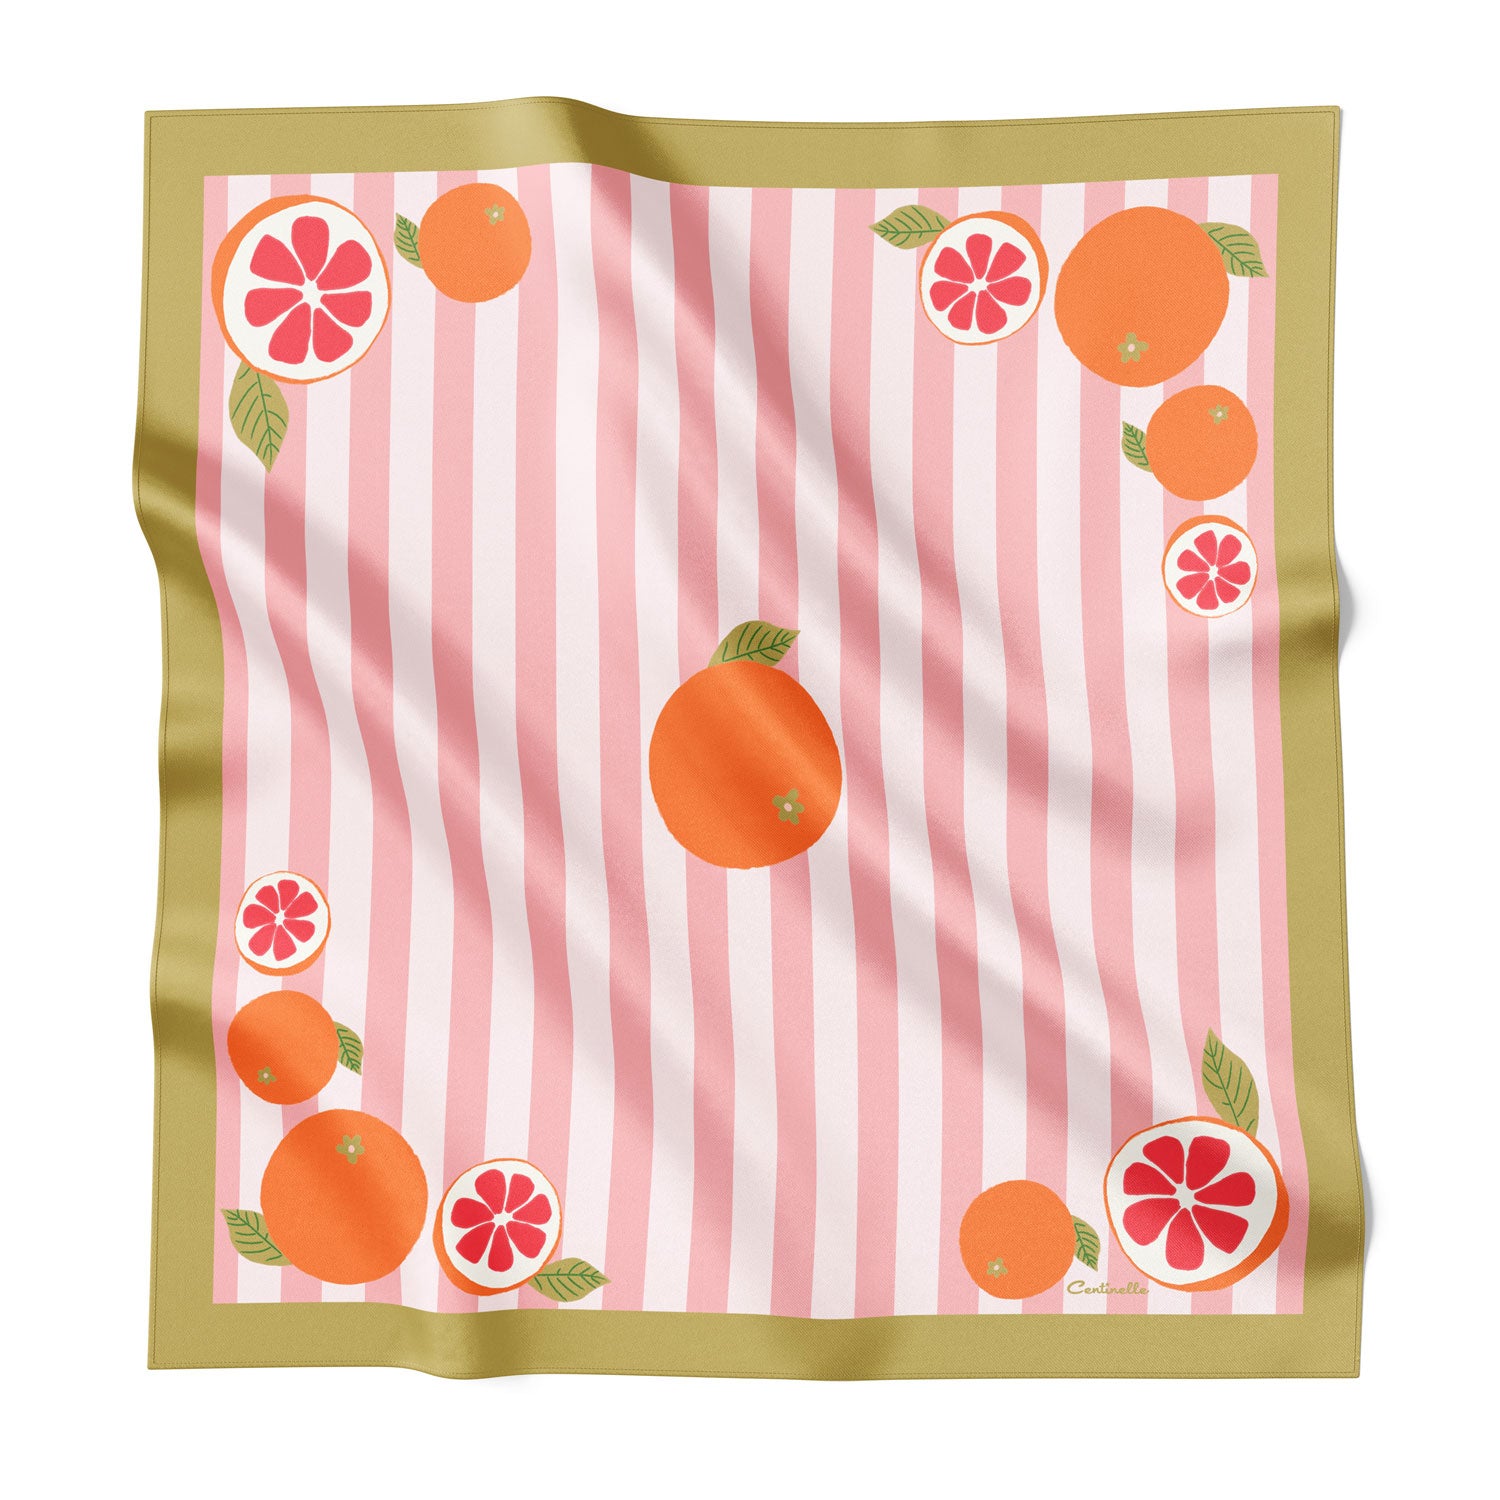 Pomelos oranges on striped silk scarf.